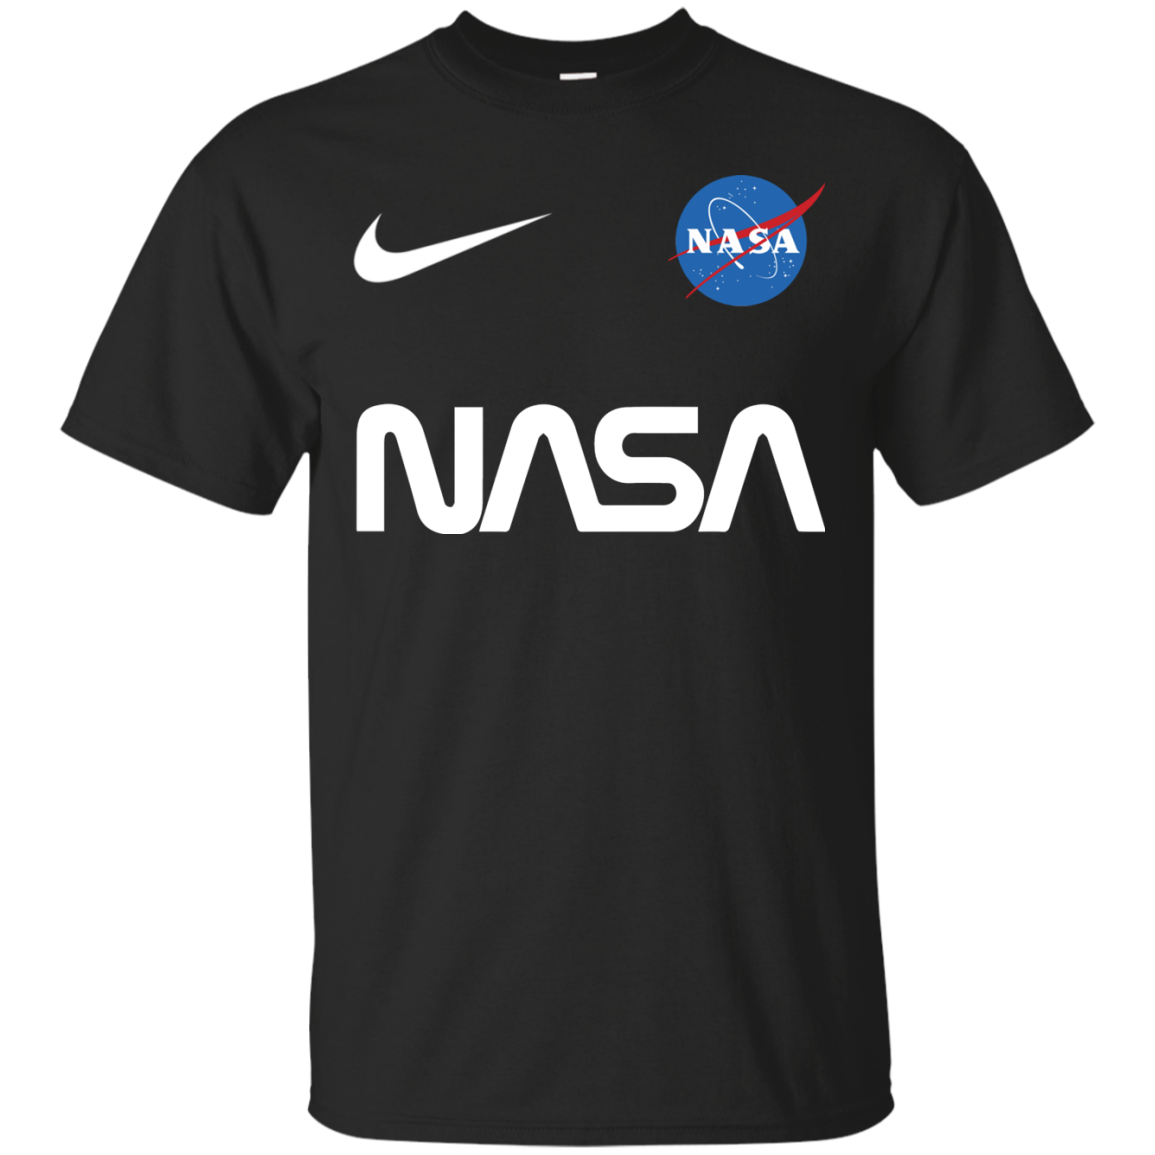 Nasa Astronaut logo Nike funny t shirt Cotton t shirt Men ... - Funny Nike Logos